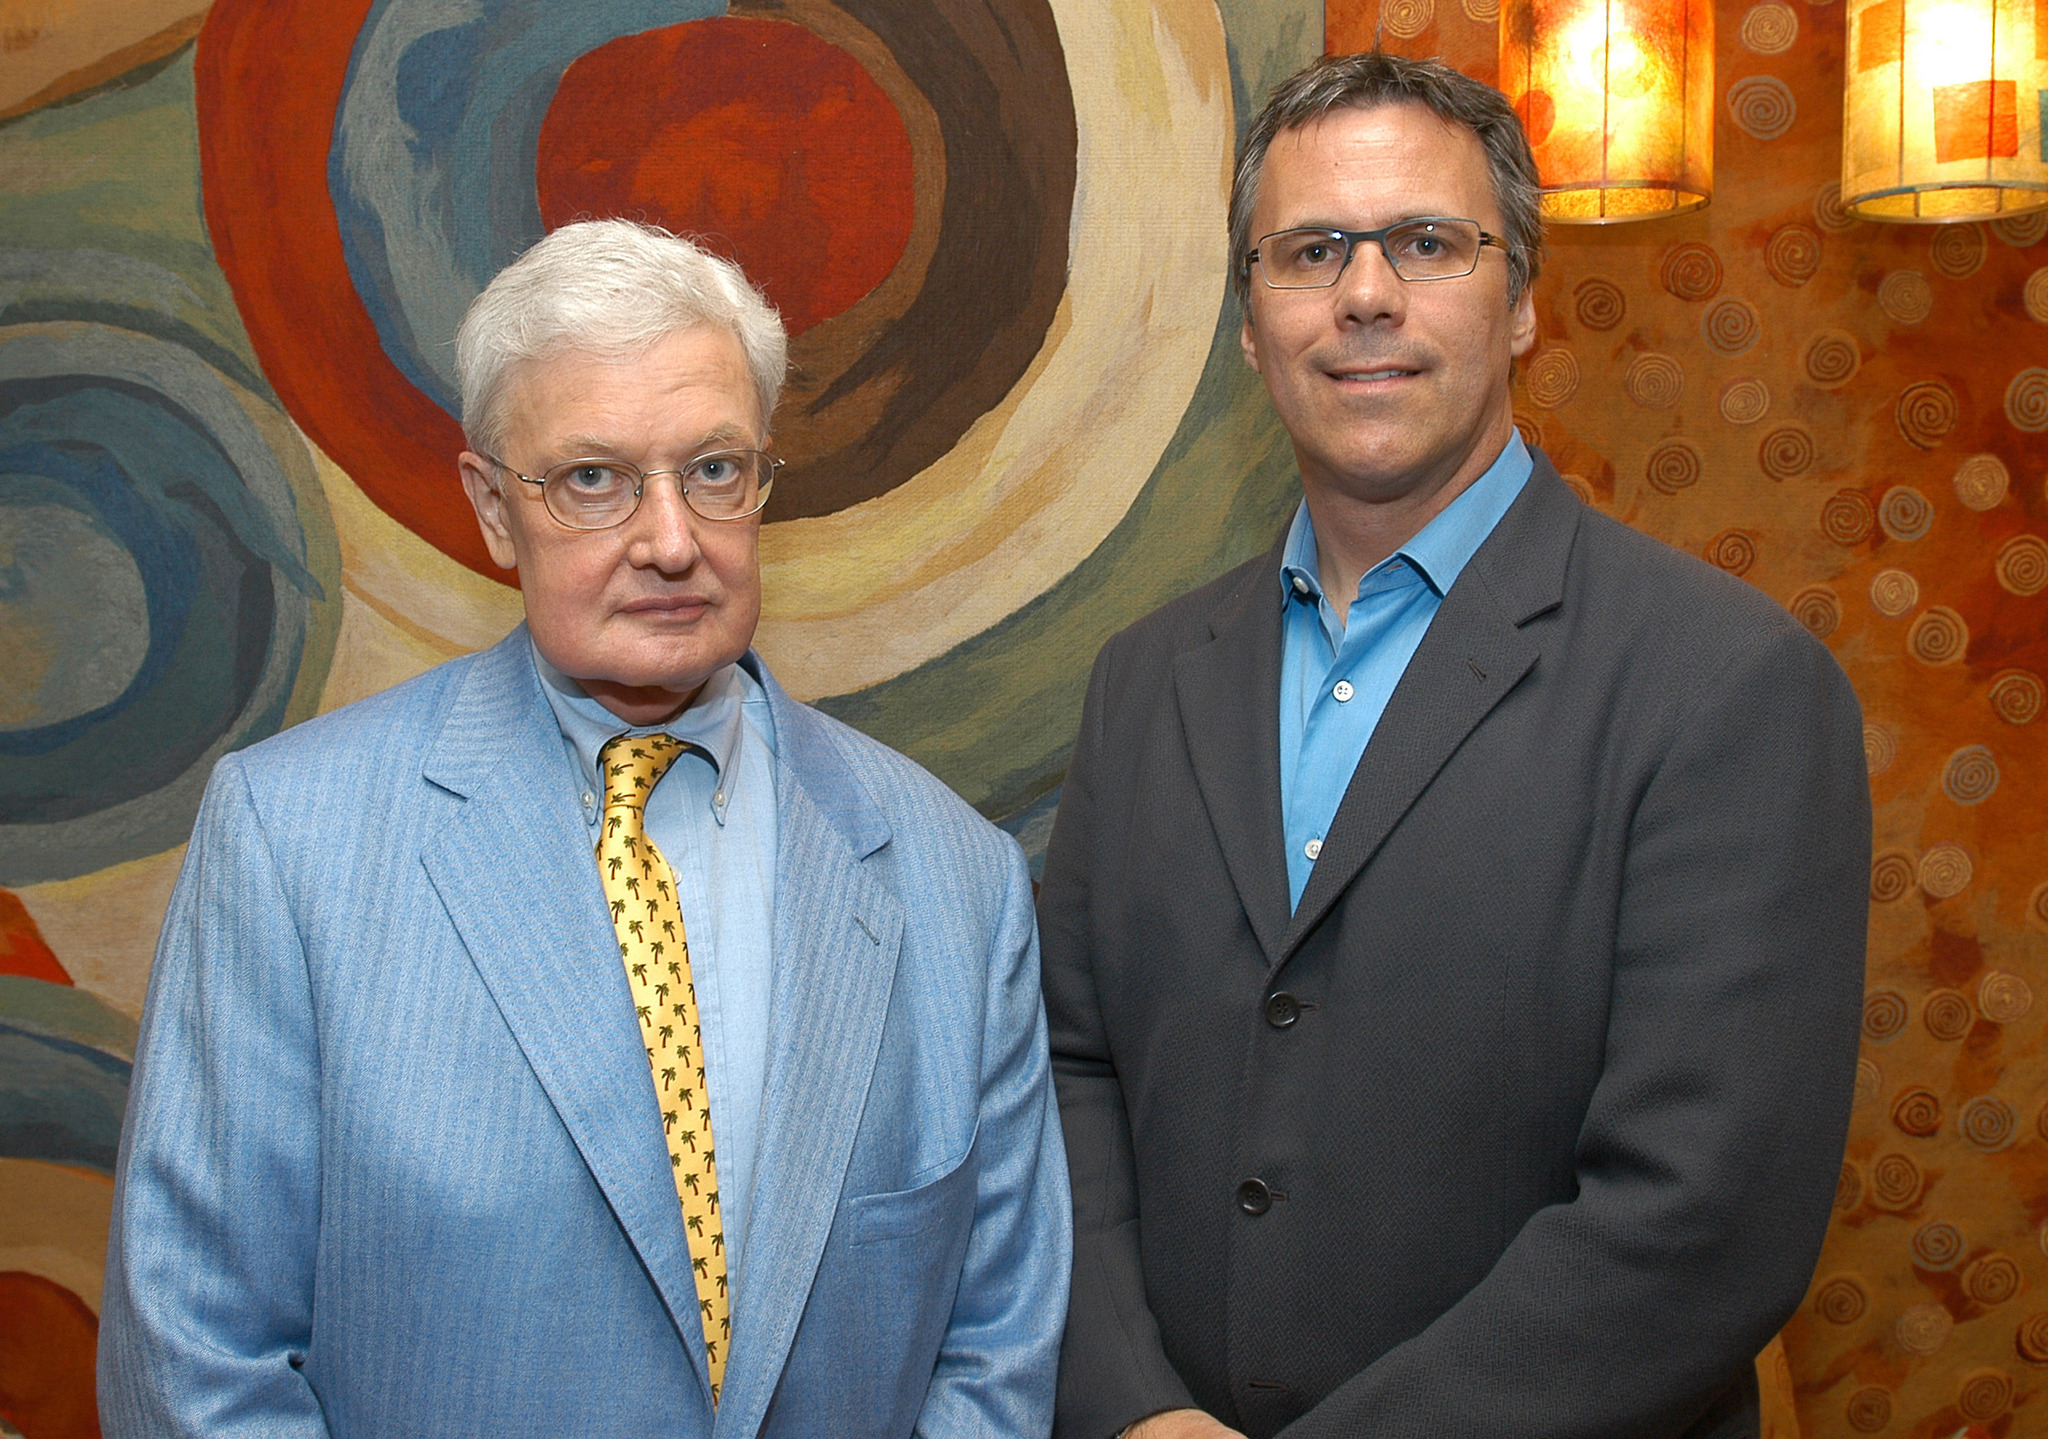 Roger Ebert and Richard Roeper